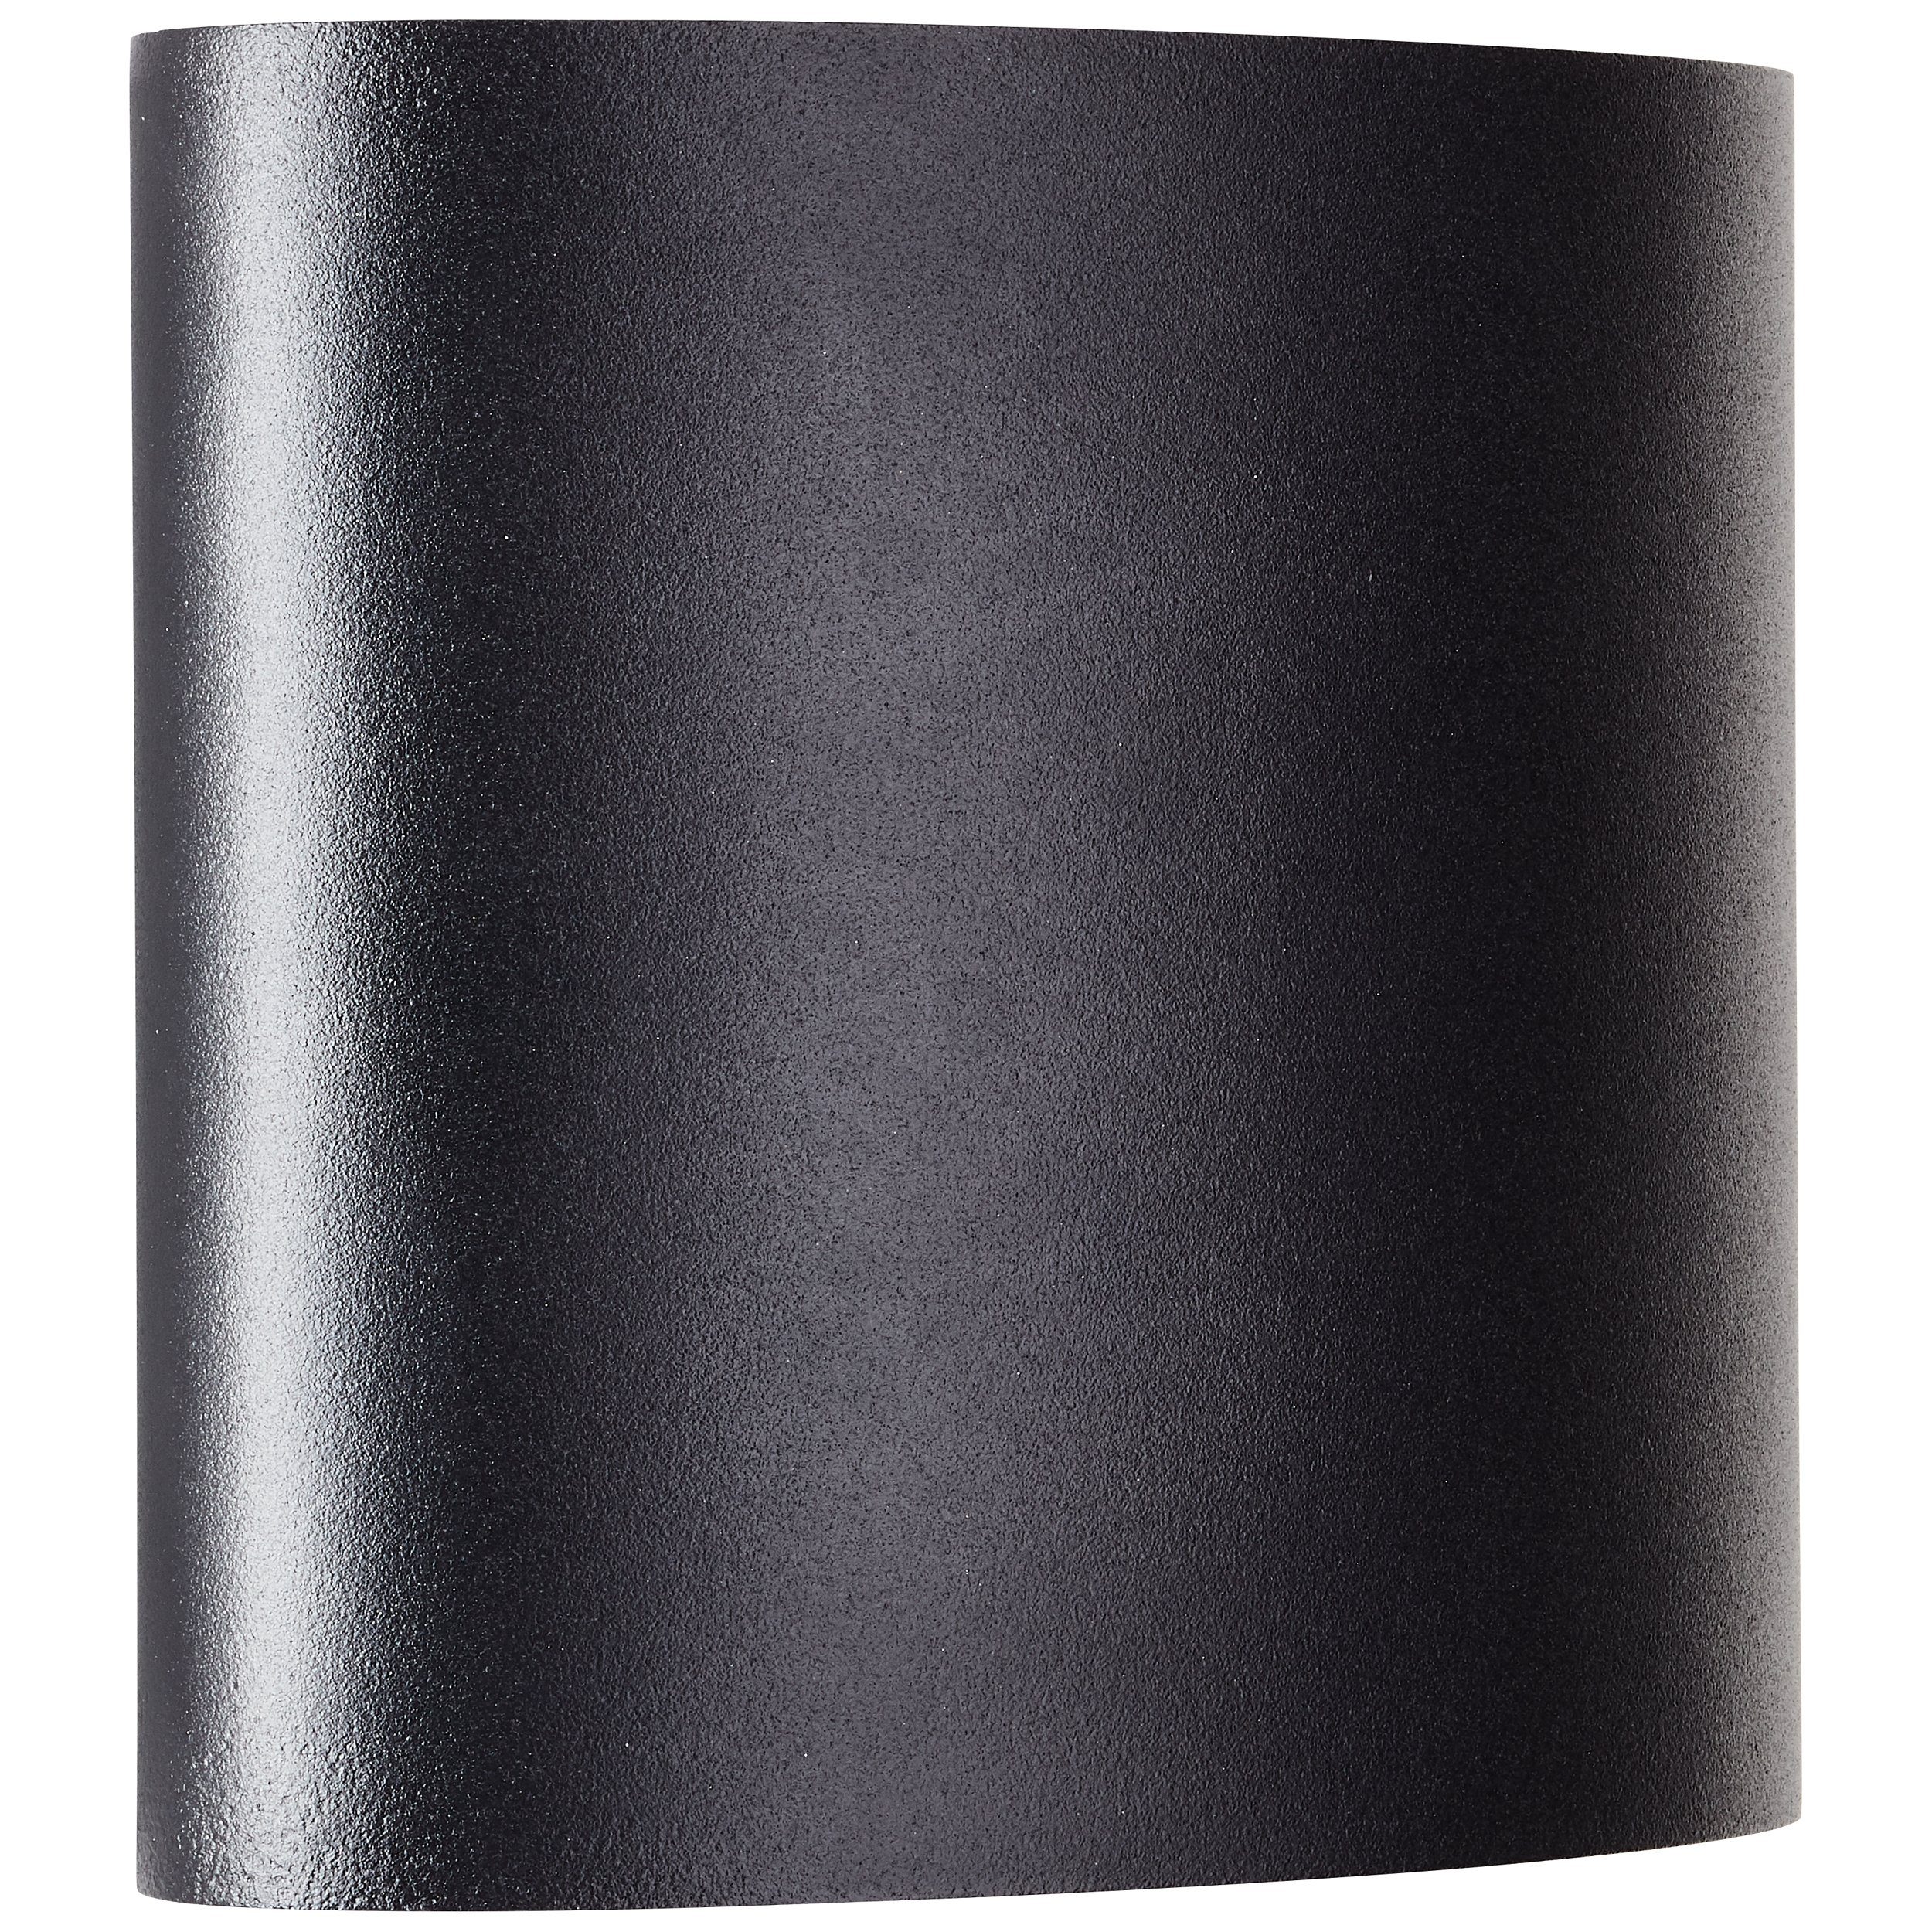 Brilliant LED Tursdale schwarz, sand LED 4x Tursdale, Außen-Wandleuchte Aluminium/Kunststoff, L Außenwandleuchte